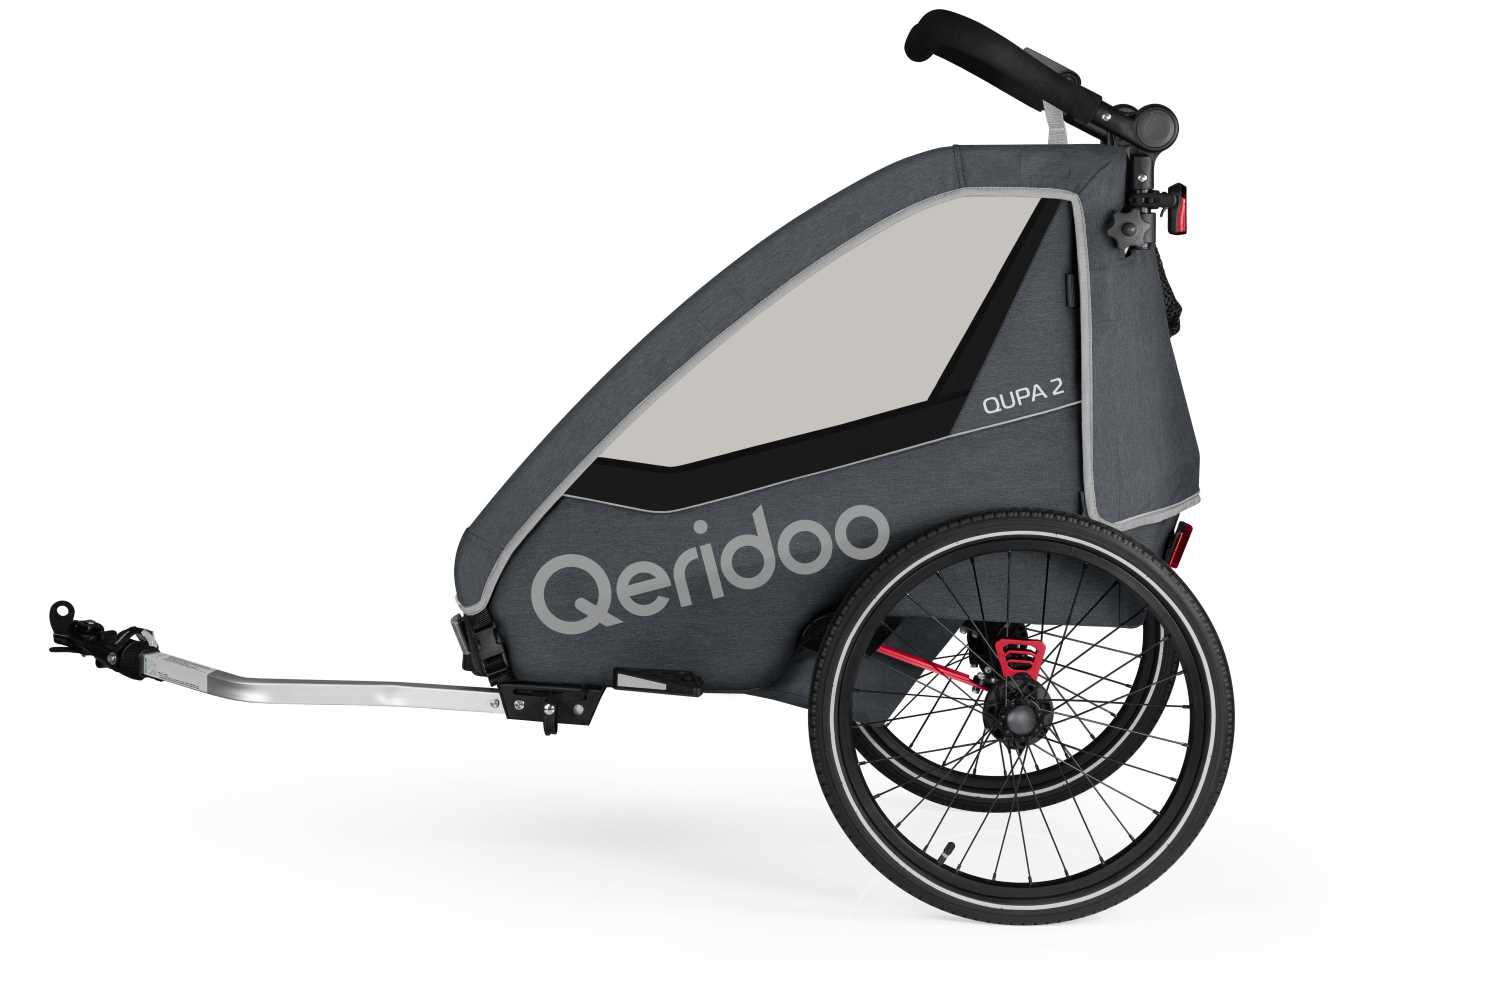 Produktbild von Qeridoo Qupa 2 (2023), grau (Q-QUP2-23-GR), Zweisitzer Kinderfahrradanhänger mit Blattfeder Dämpfsystem